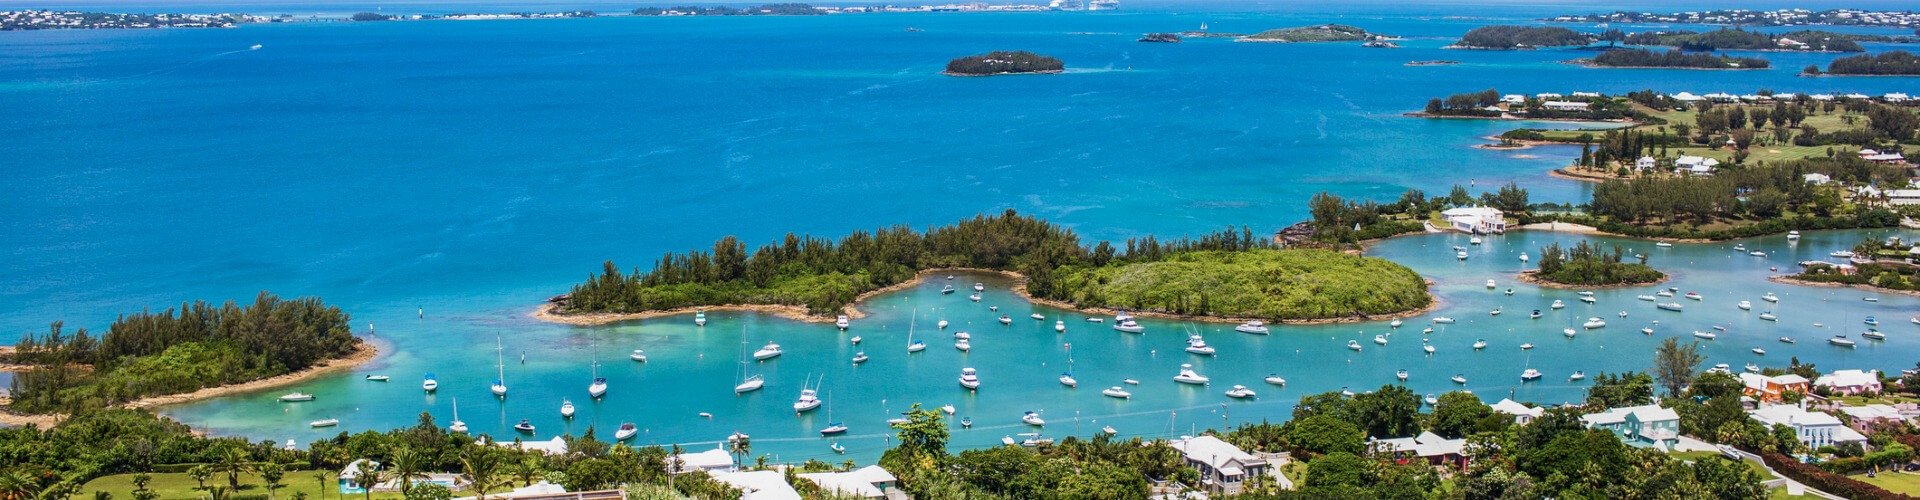 Familienurlaub auf Bermuda